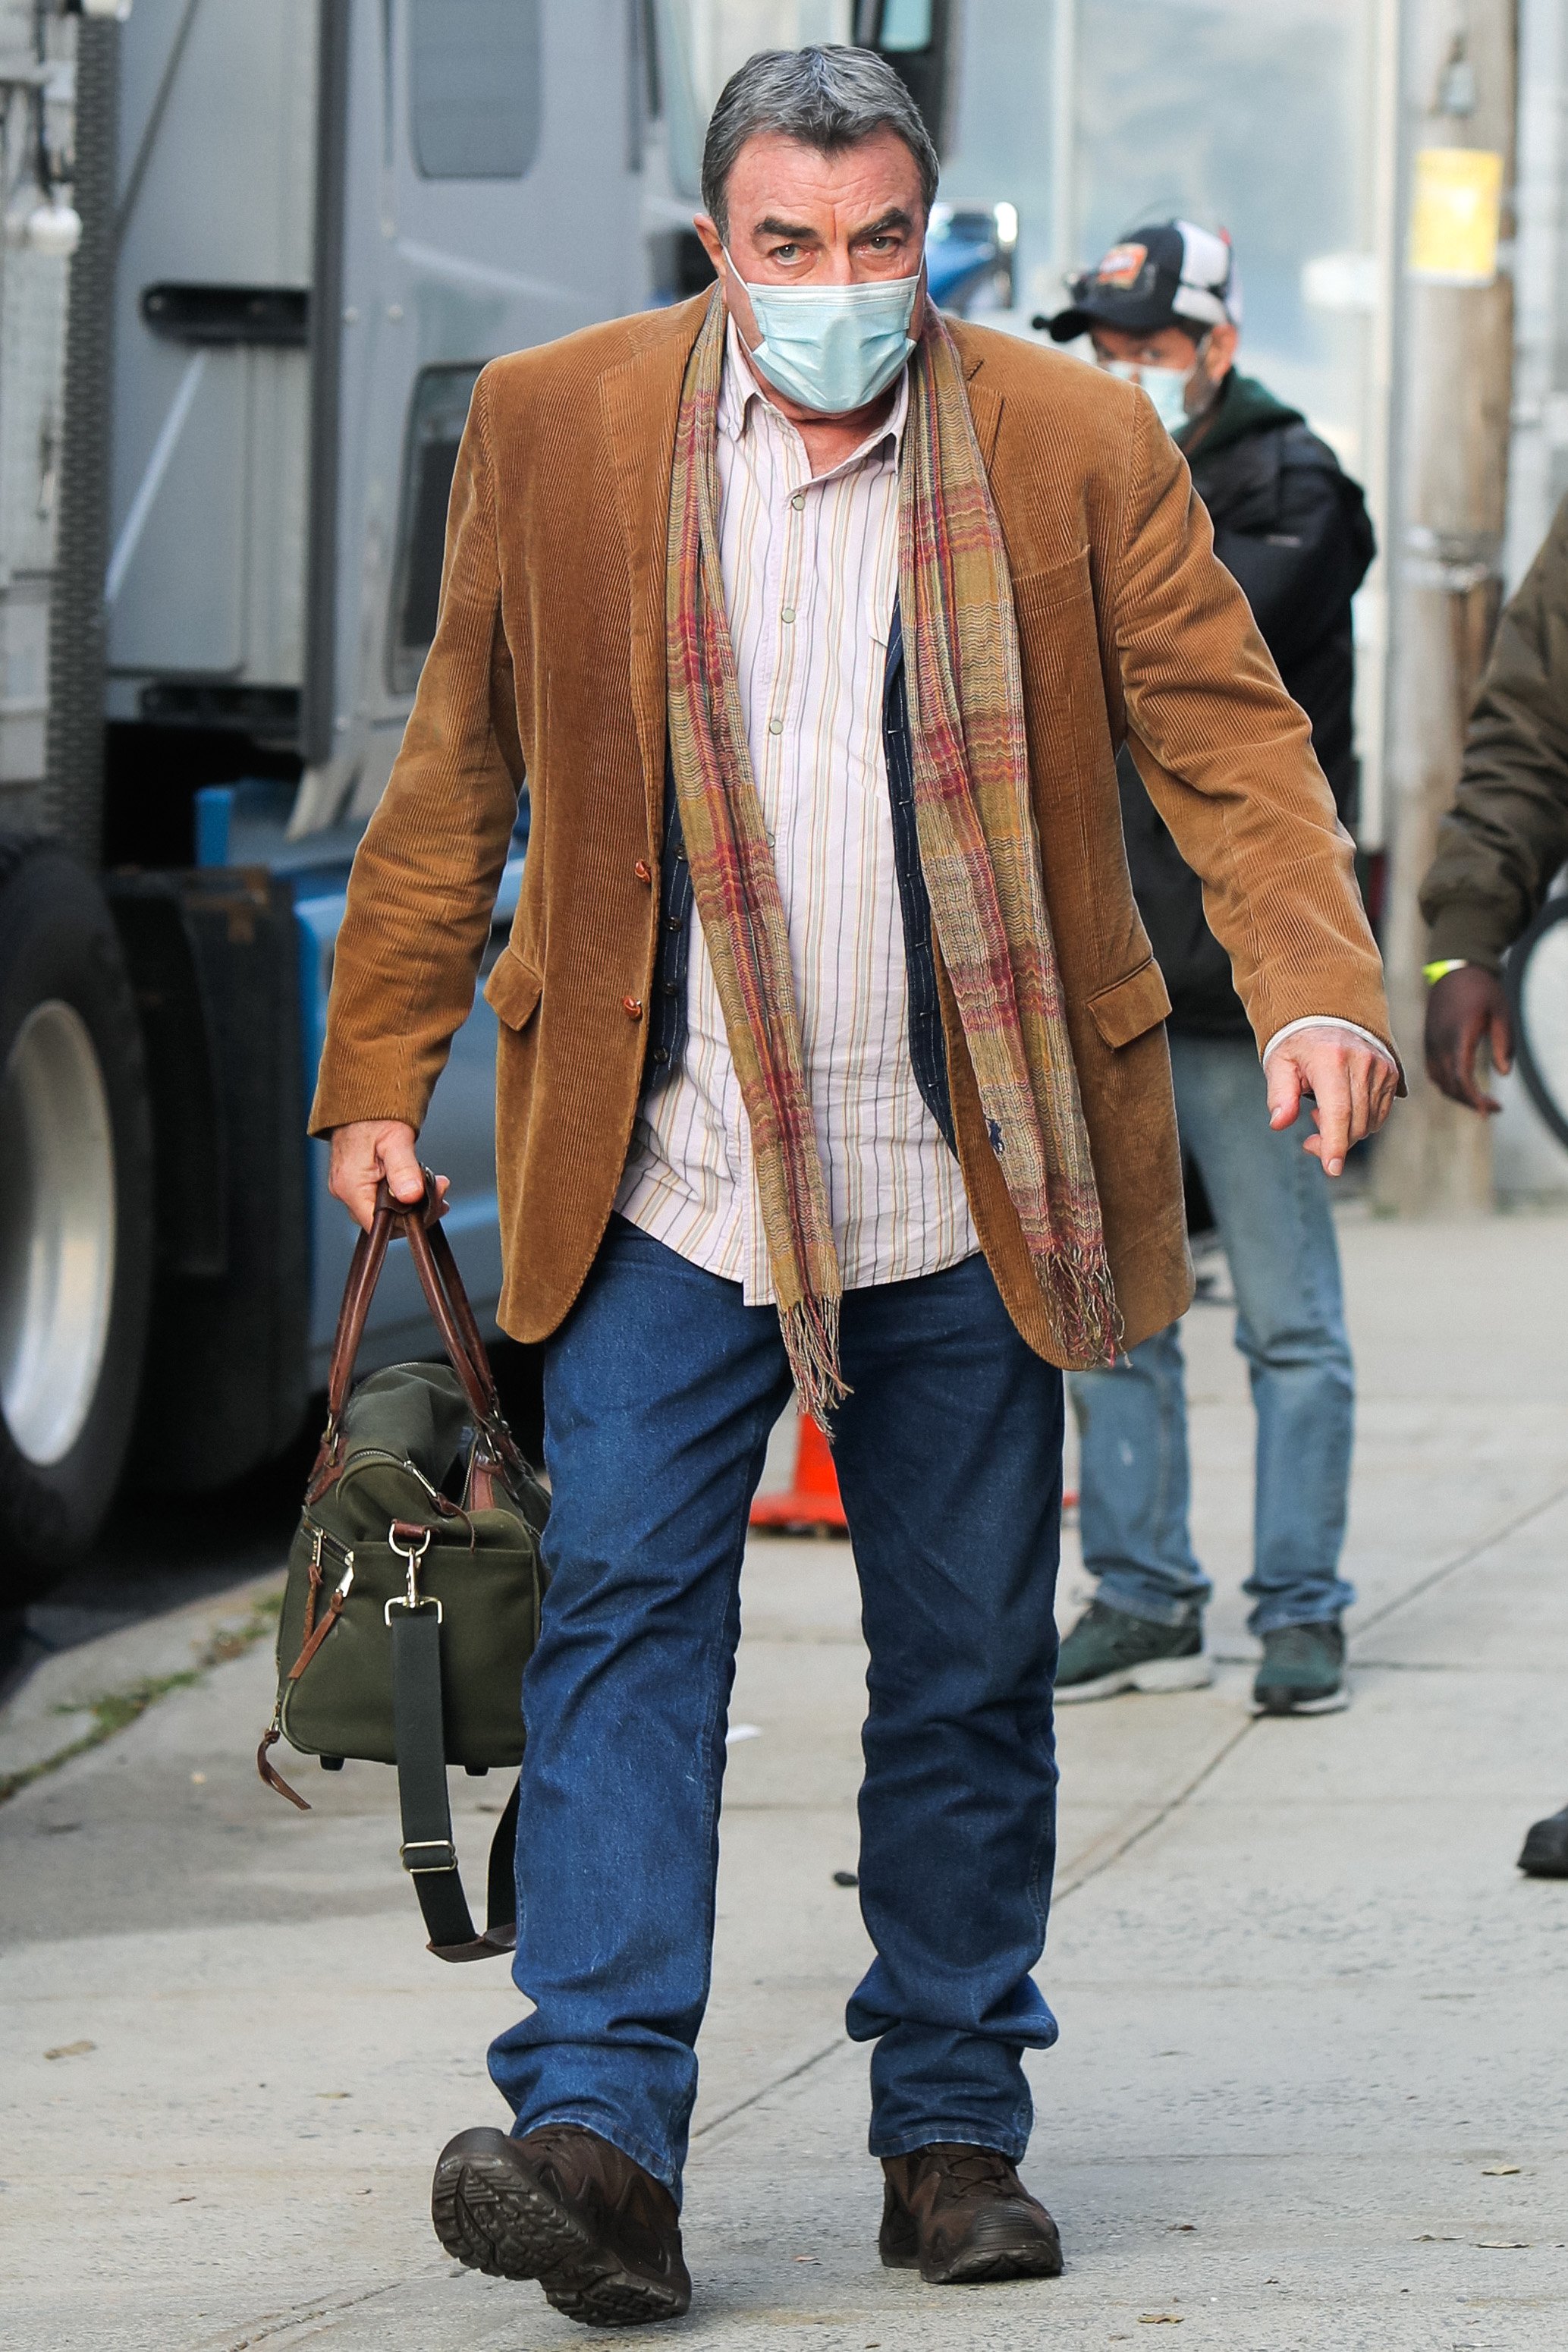 Tom Selleck en el set de filmación de la serie de televisión "Blue Bloods", el 20 de octubre de 2020 en Nueva York. | Foto: Getty Images